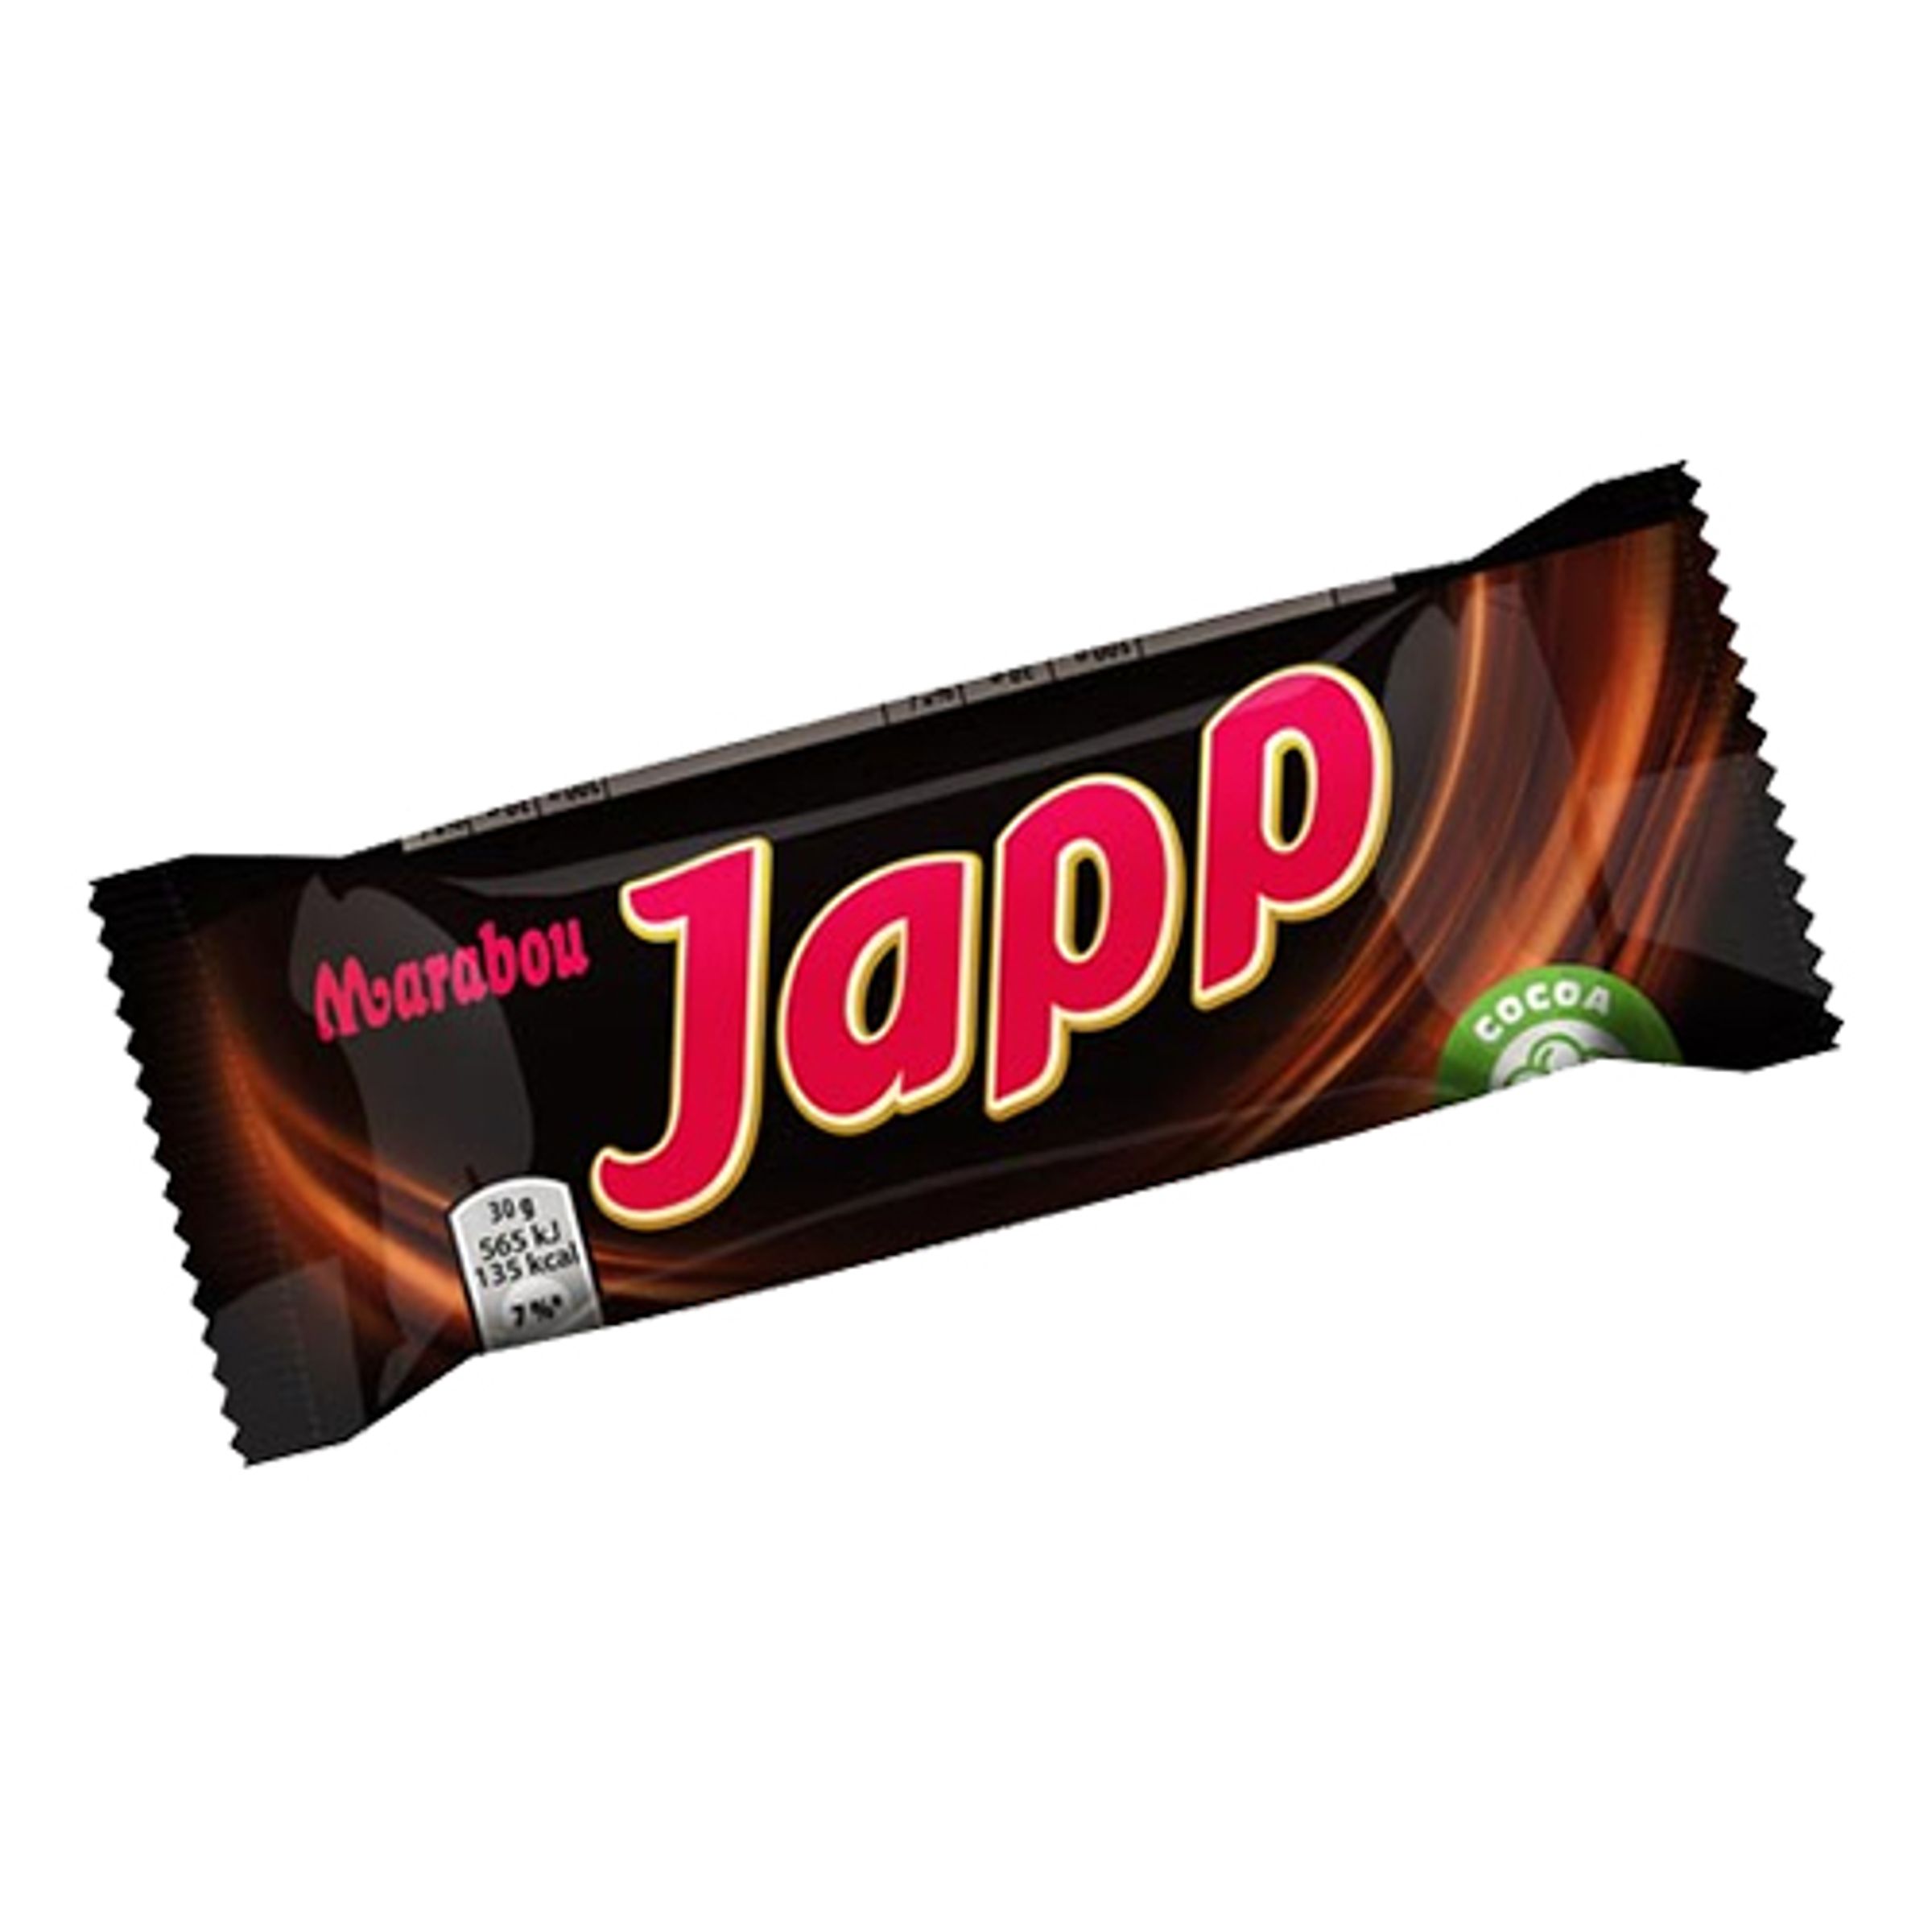 Japp Chokladbit